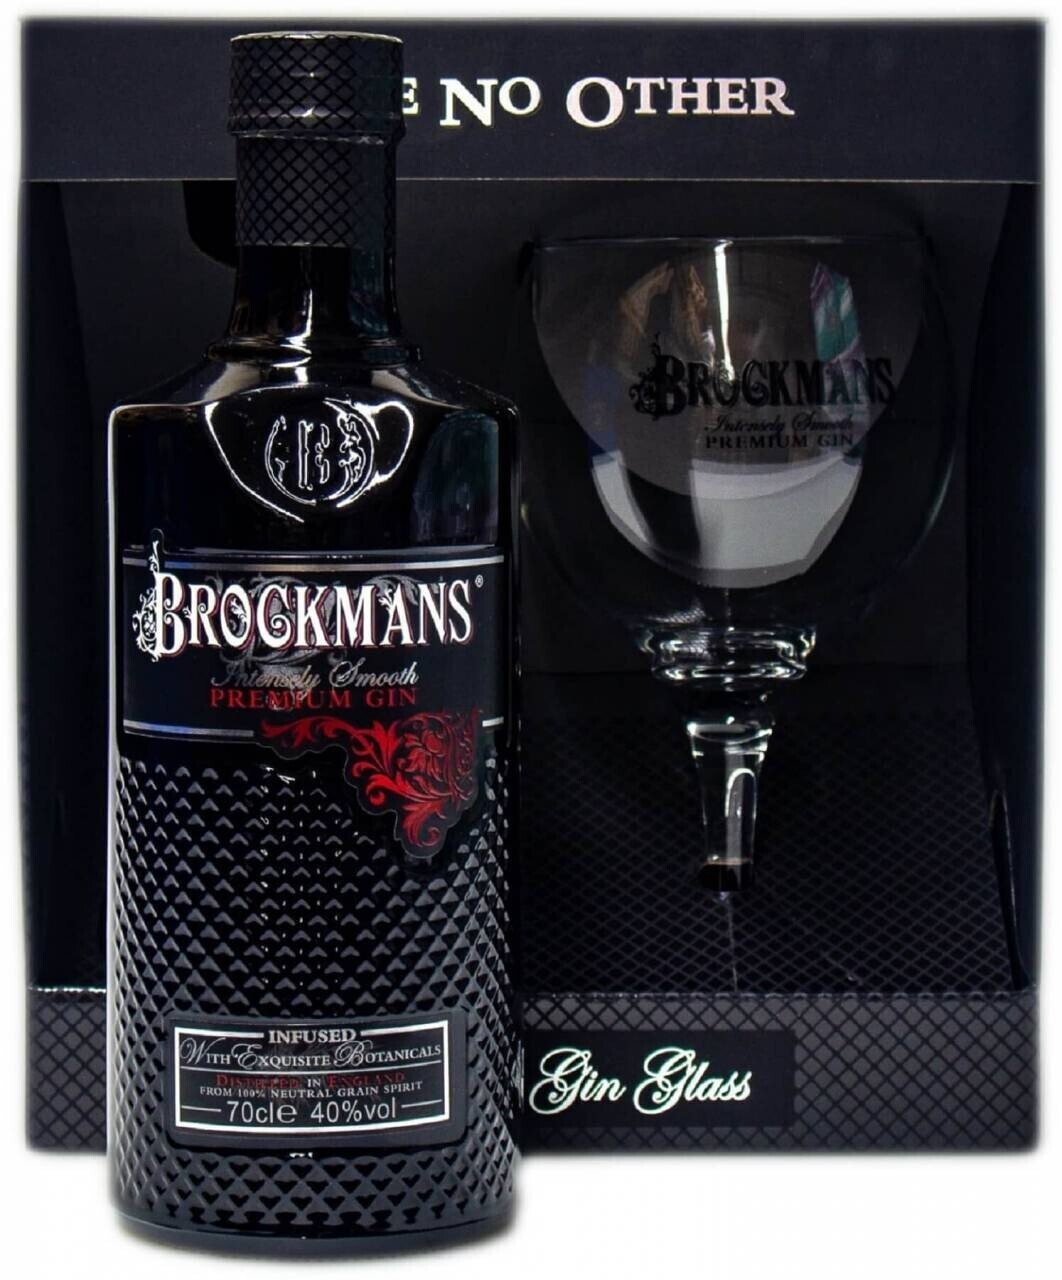 28,90 40% Preisvergleich mit Gin Intensely € Smooth 0,7l Premium Brockmans Geschenkset bei Glas ab |